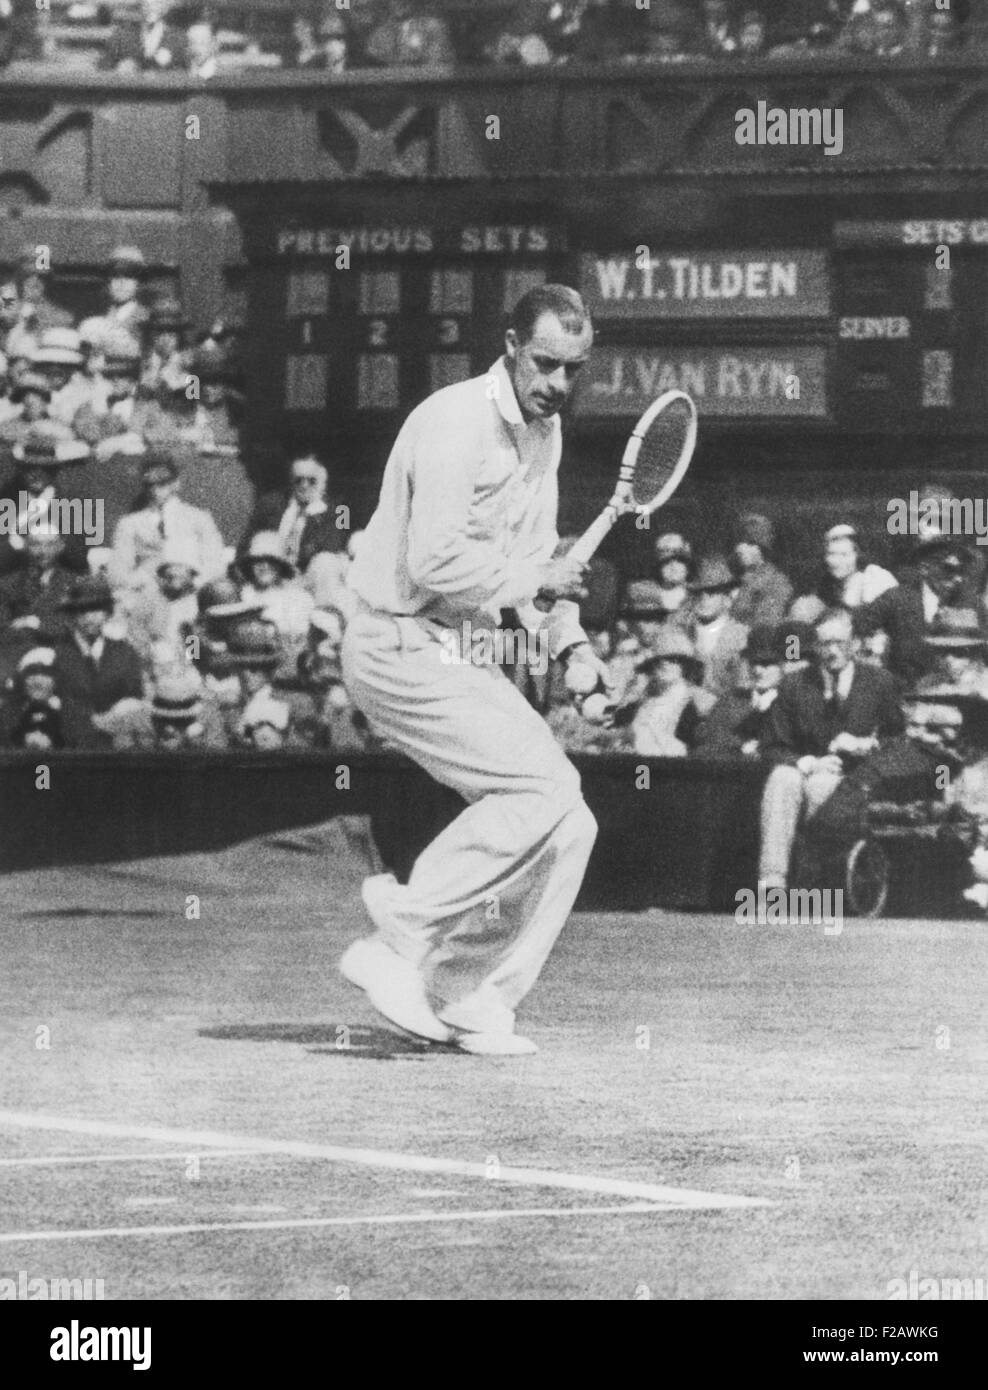 Bill Tilden come ha giocato contro John Van Ryn, a Wimbledon, 2 luglio 1930. Tilden sconfitto Van Ryn in tre set, 7-5, 6-4, 6-1, nel terzo round di uomini singoli. Tilden andati su Win 1930 Uomini Singoli a Wimbledon. (CSU 2015 11 1325) Foto Stock